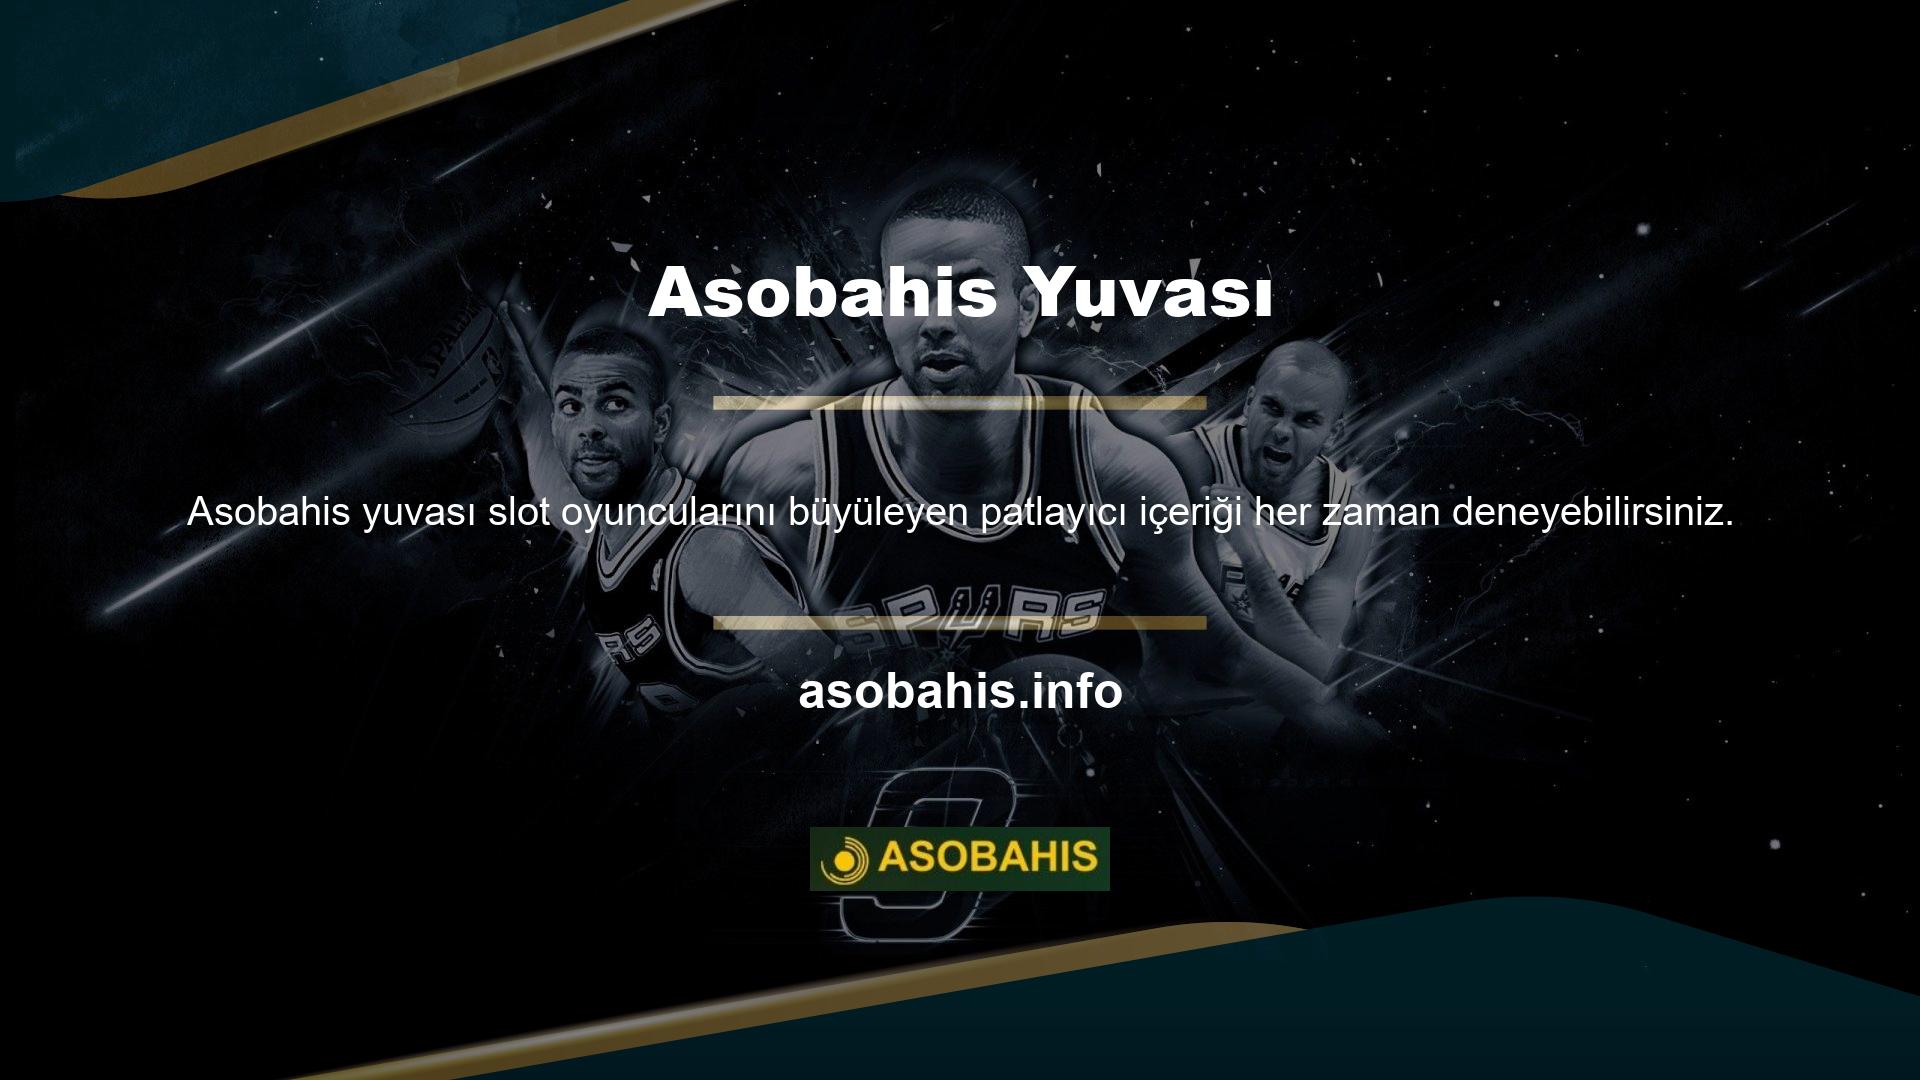 Asobahis TV platformunda dünyanın dört bir yanından spor etkinliklerini ücretsiz izlemeye hazır olun! Zaman kaybetmeden oyun oynamak isteyenler için Asobahis, aynı akıllı cihaza özel olarak tasarlanmış Asobahis mobil web sitesini Asobahis sunuyor